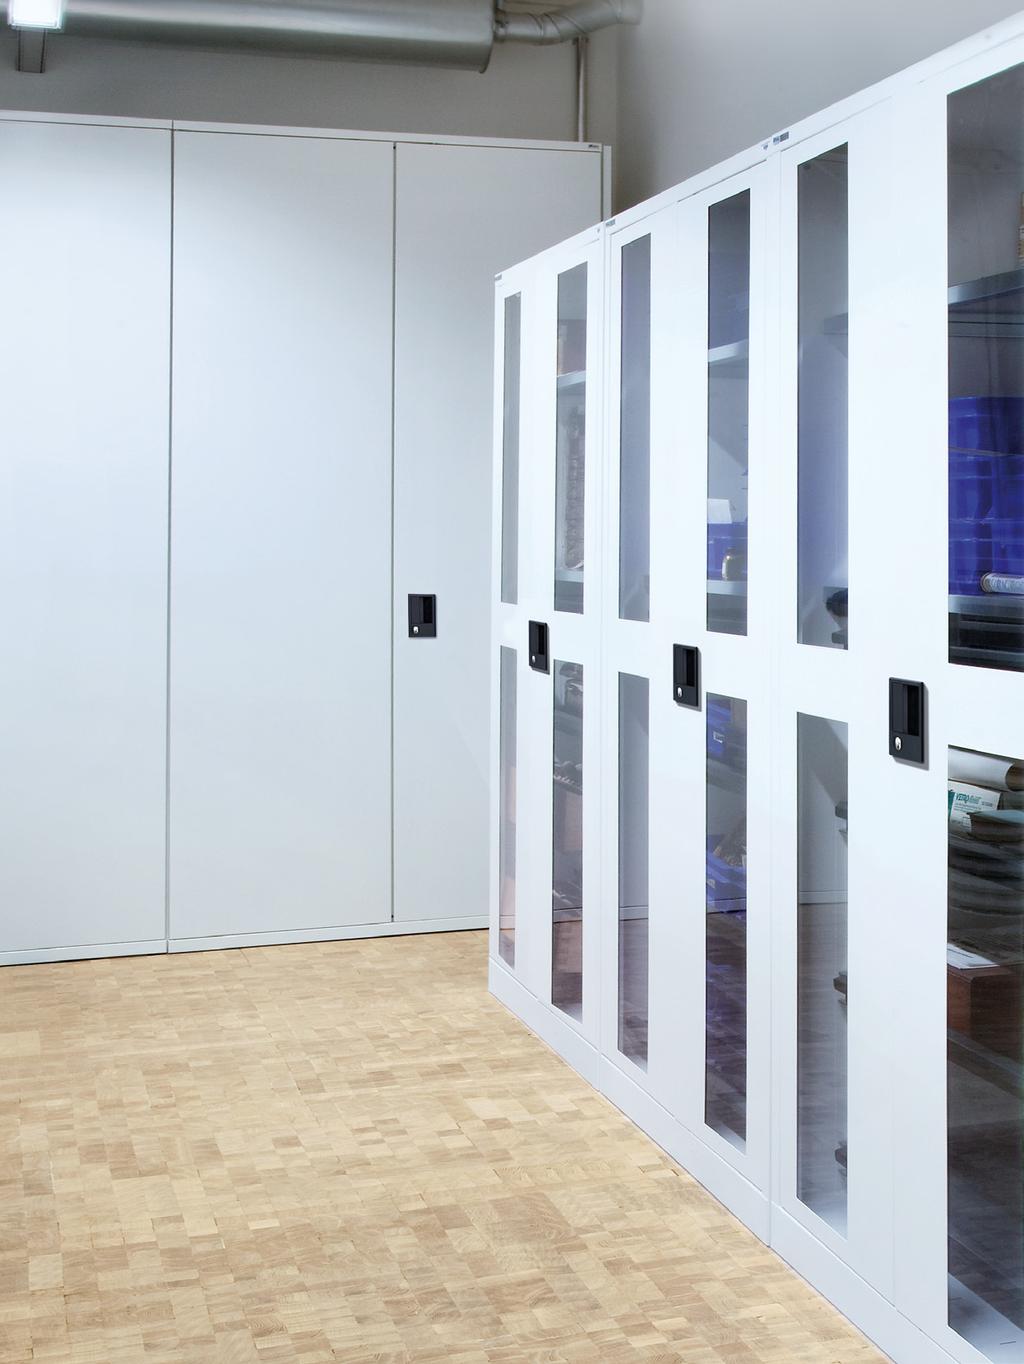 Systèmes d armoires I Armoires à portes battantes es armoires à portes battantes ISTA permettent un rangement sûr et propre des marchandises les plus diverses.